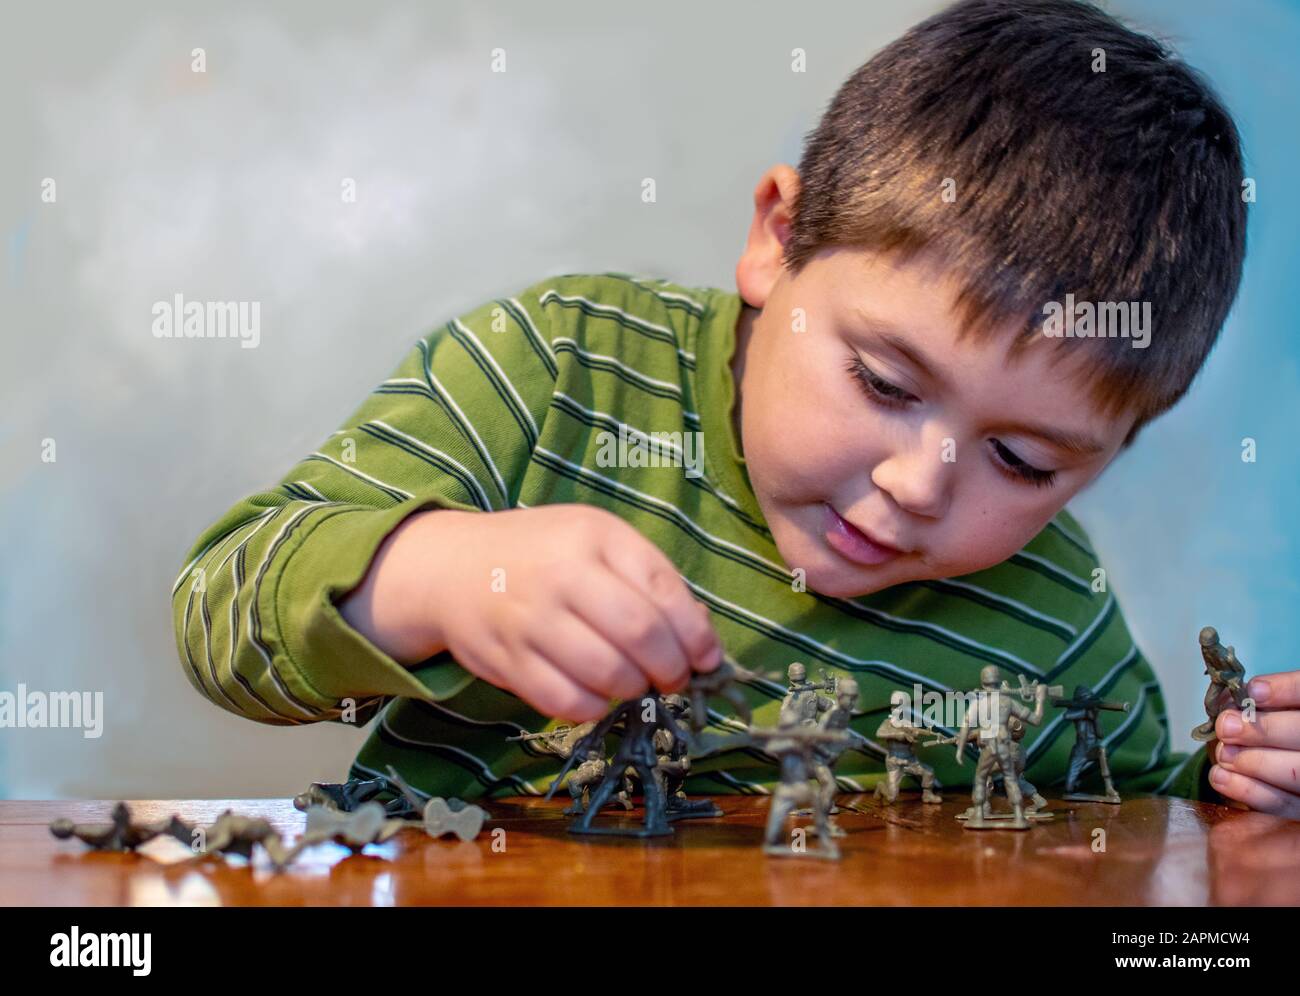 Le jeune garçon joue avec des figurines de soldat jouet Banque D'Images